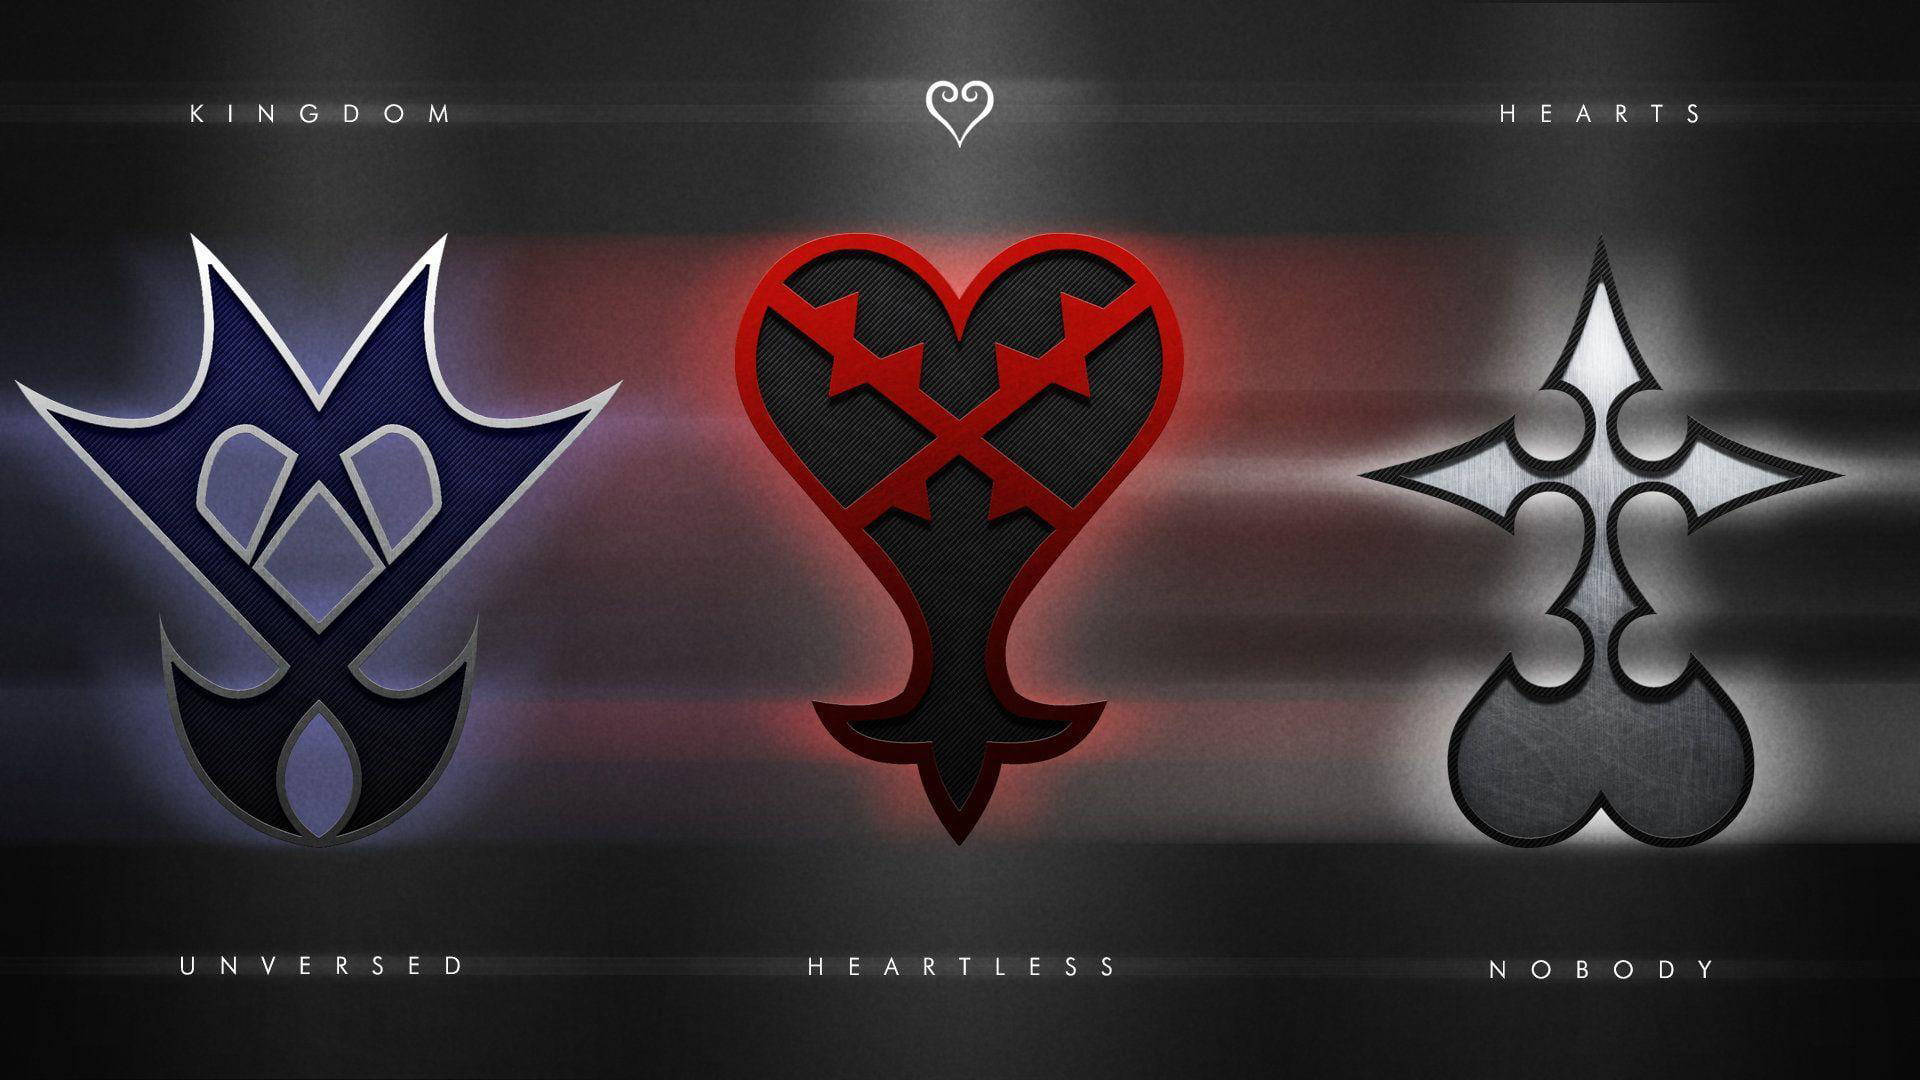 Obrade Arte Brillante Del Logotipo De Kingdom Hearts Fondo de pantalla